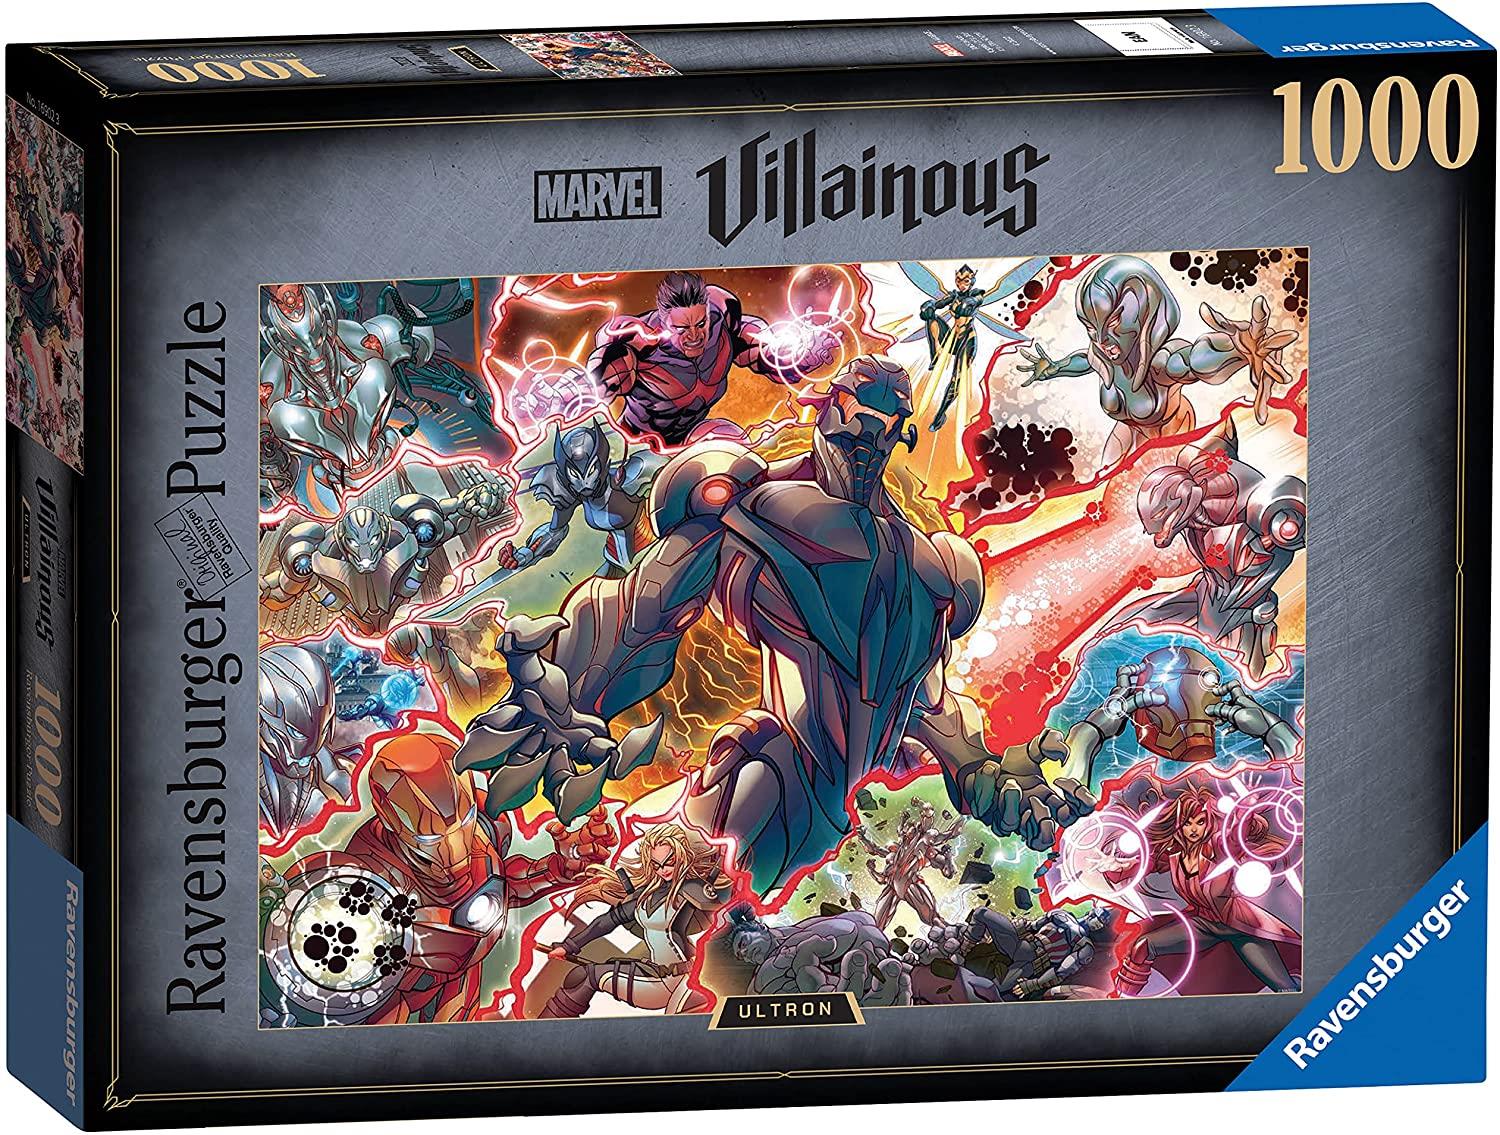 Ravensburger Marvel Villainous Ultron Jigsaw Puzzle (1000 Pieces)